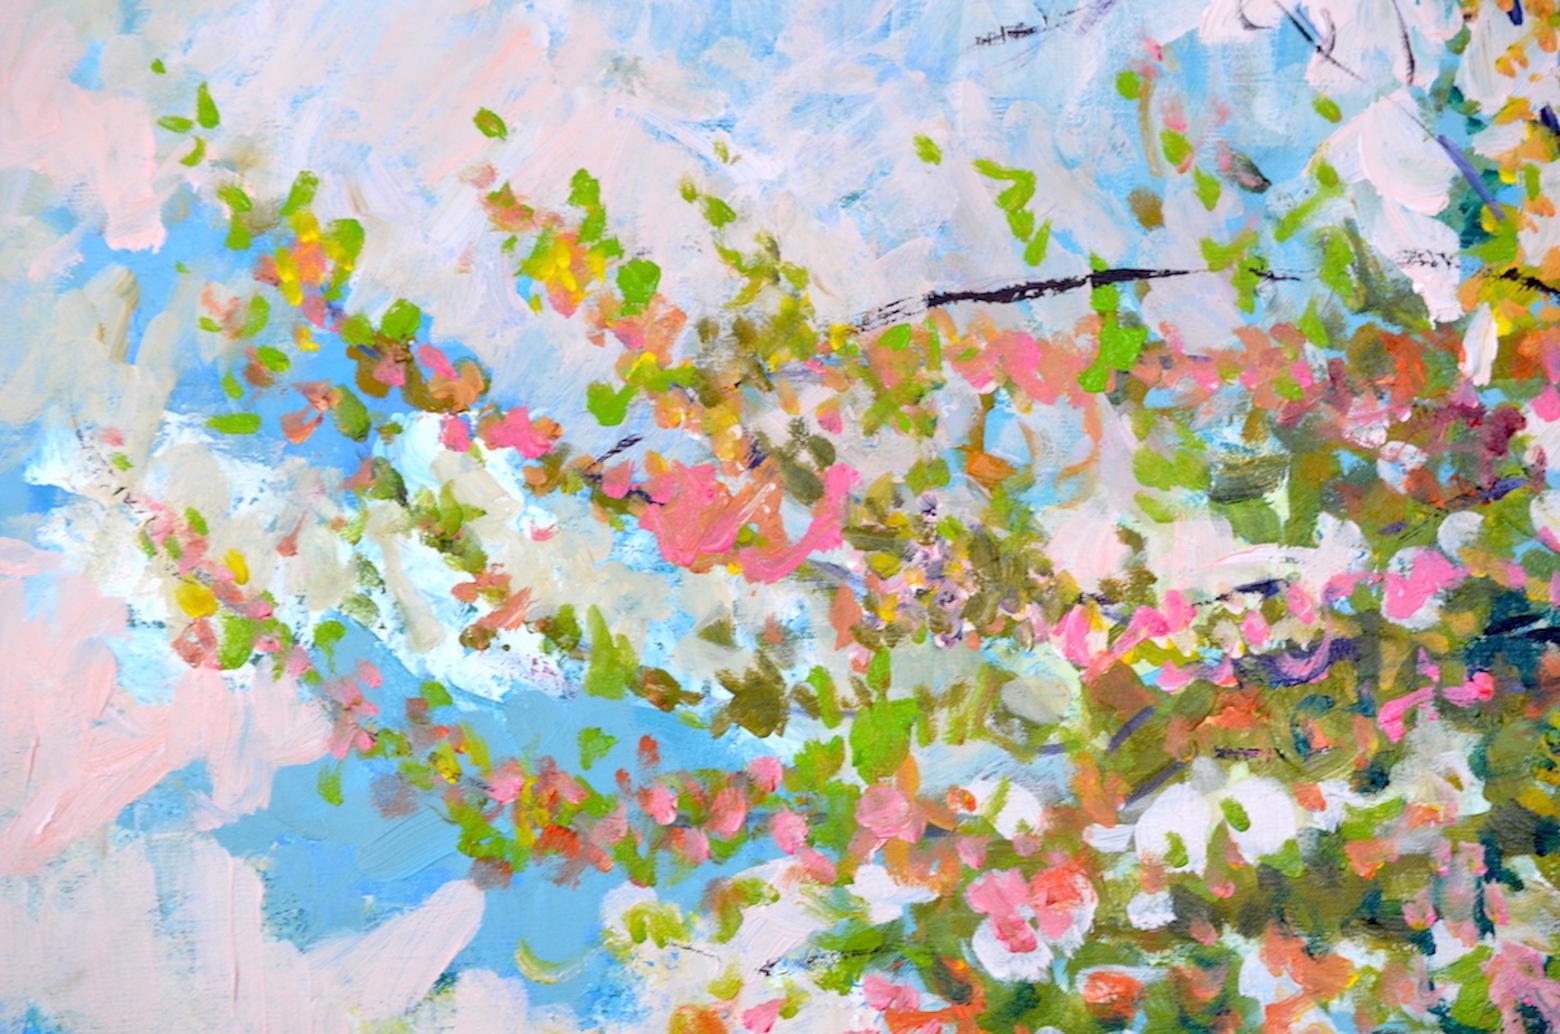 Cette peinture est inspirée des bords de la Marne en France et des ballades artistiques de Linda Clerget. L'œuvre incite ainsi à se reconnecter, à faire une pause, à faire corps avec la nature et le printemps. La toile a été réalisée à l'acrylique